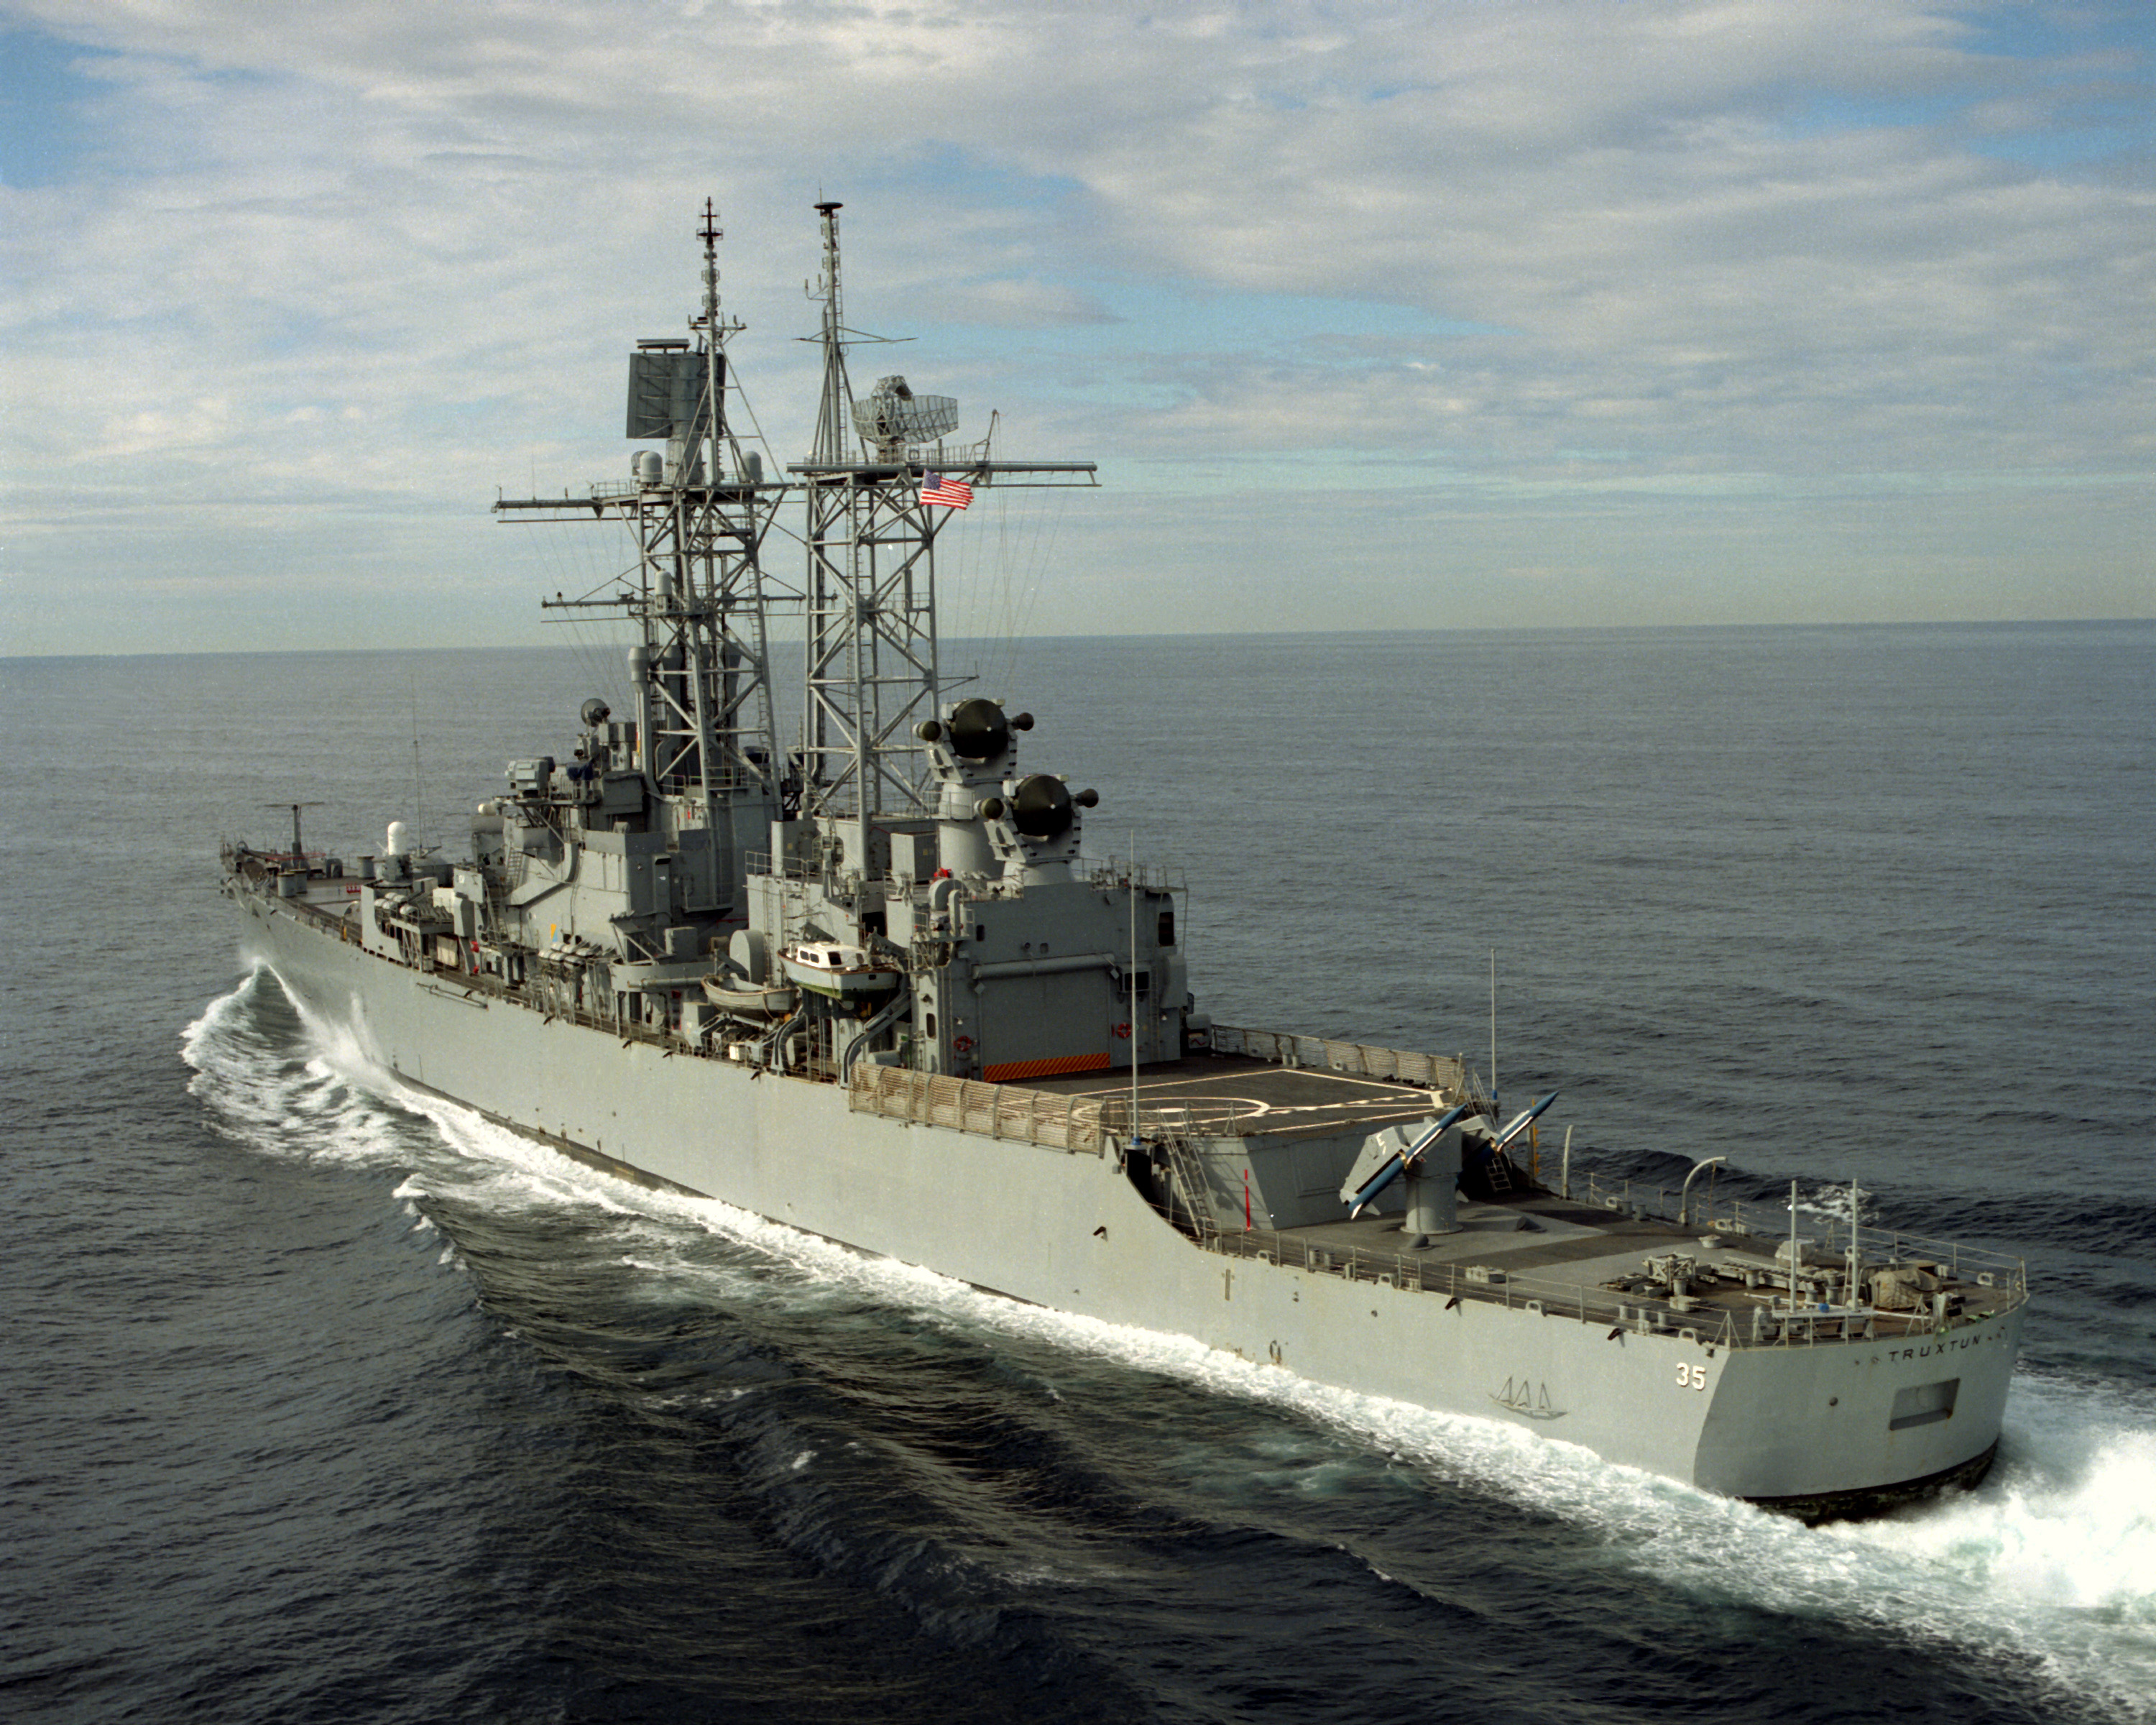 Το USS Truxtun θα παραμείνει για ασκήσεις στη Μαύρη Θάλασσα